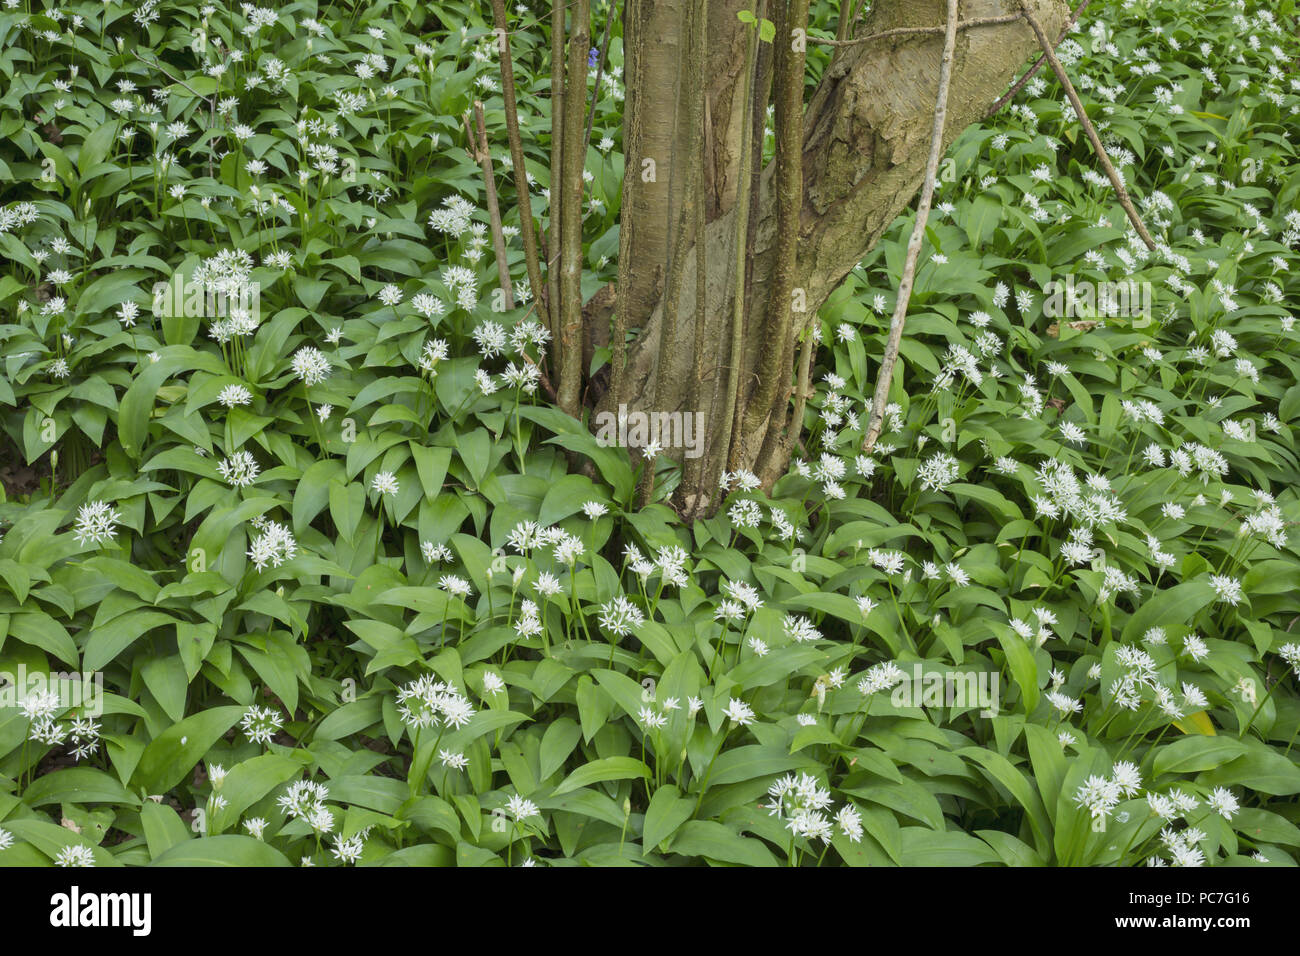 Bärlauch (Allium ursinum) Blühende Masse, und gemeinsame Hasel (Corylus avellana), Hetchell Holz, West Yorkshire, England, kann Stockfoto